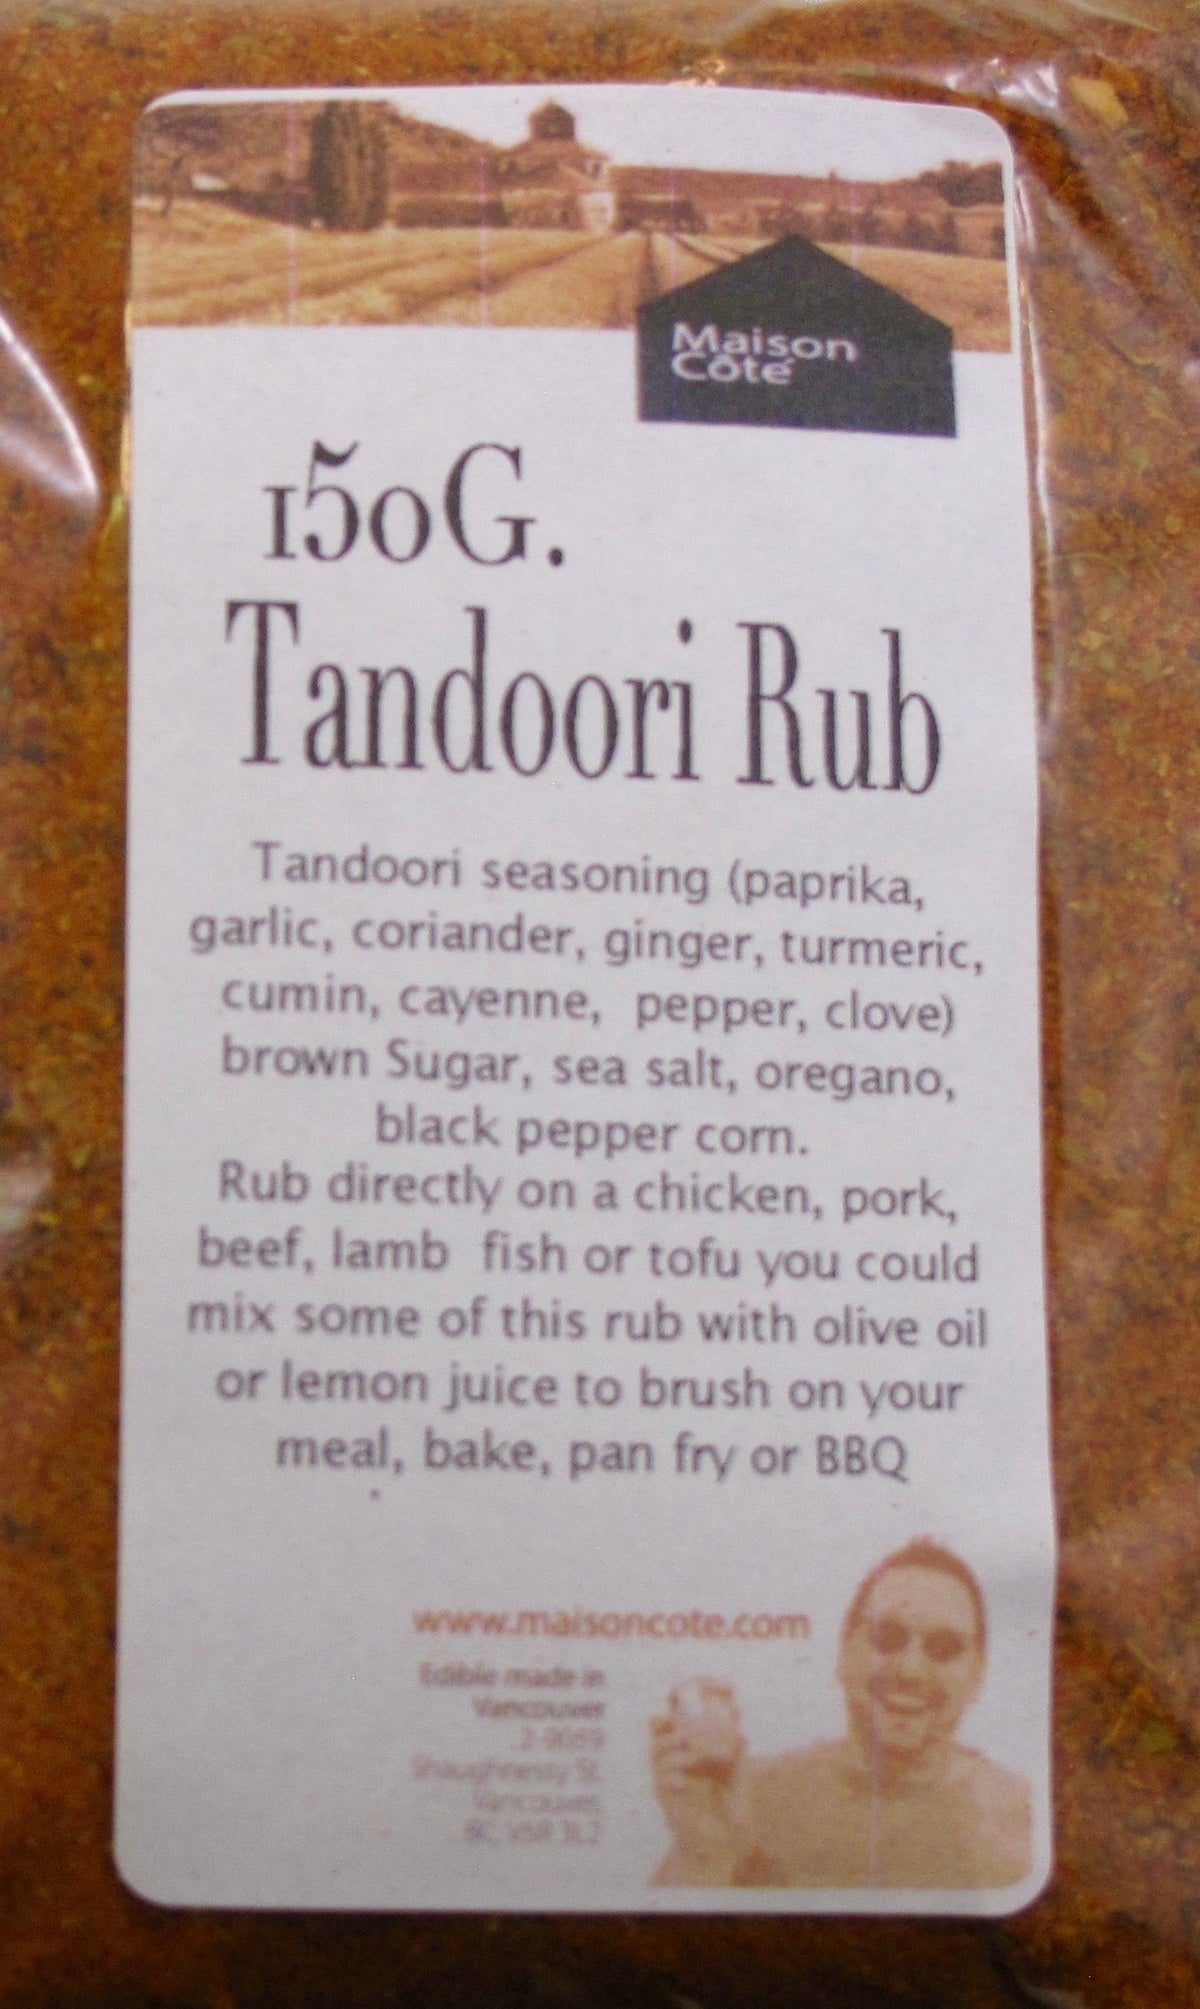 Tandoori Rub